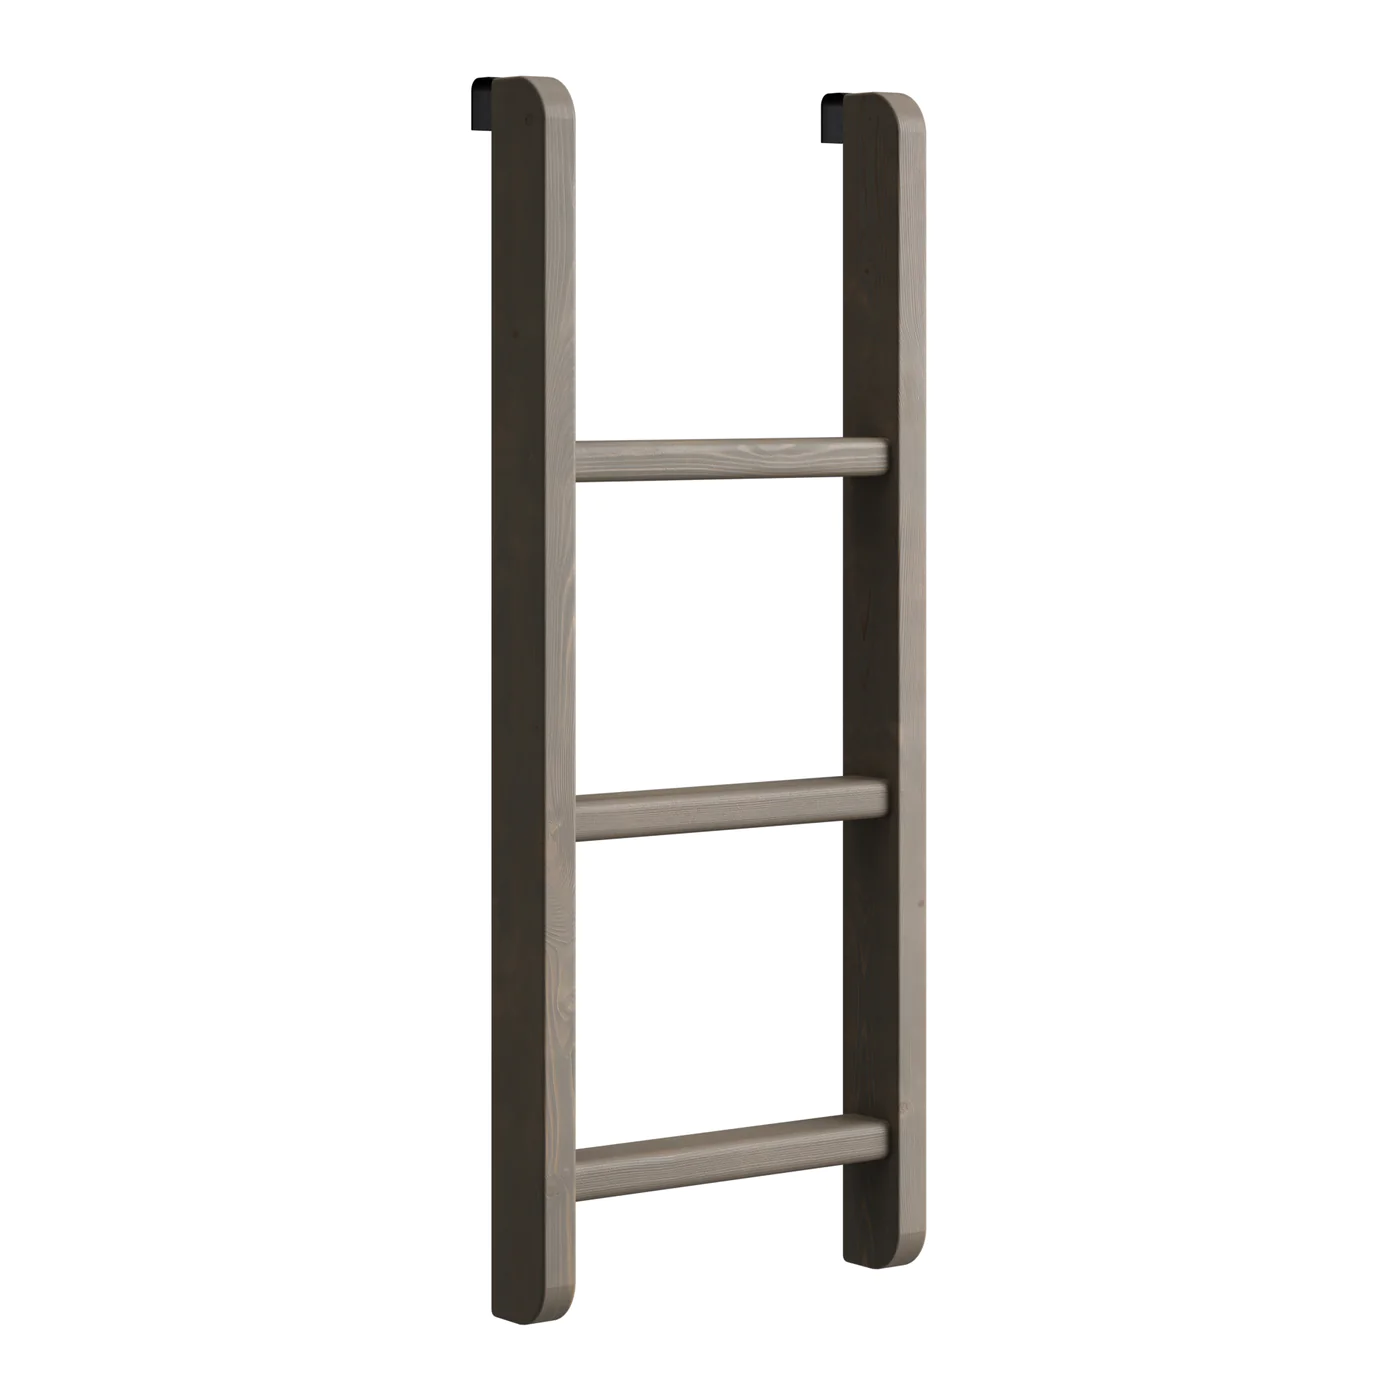 LADDER VERTICAL FOR BUNK BEDS 4719/4720 - For Ladder End, Mission & Timber  Frame Bunk Beds